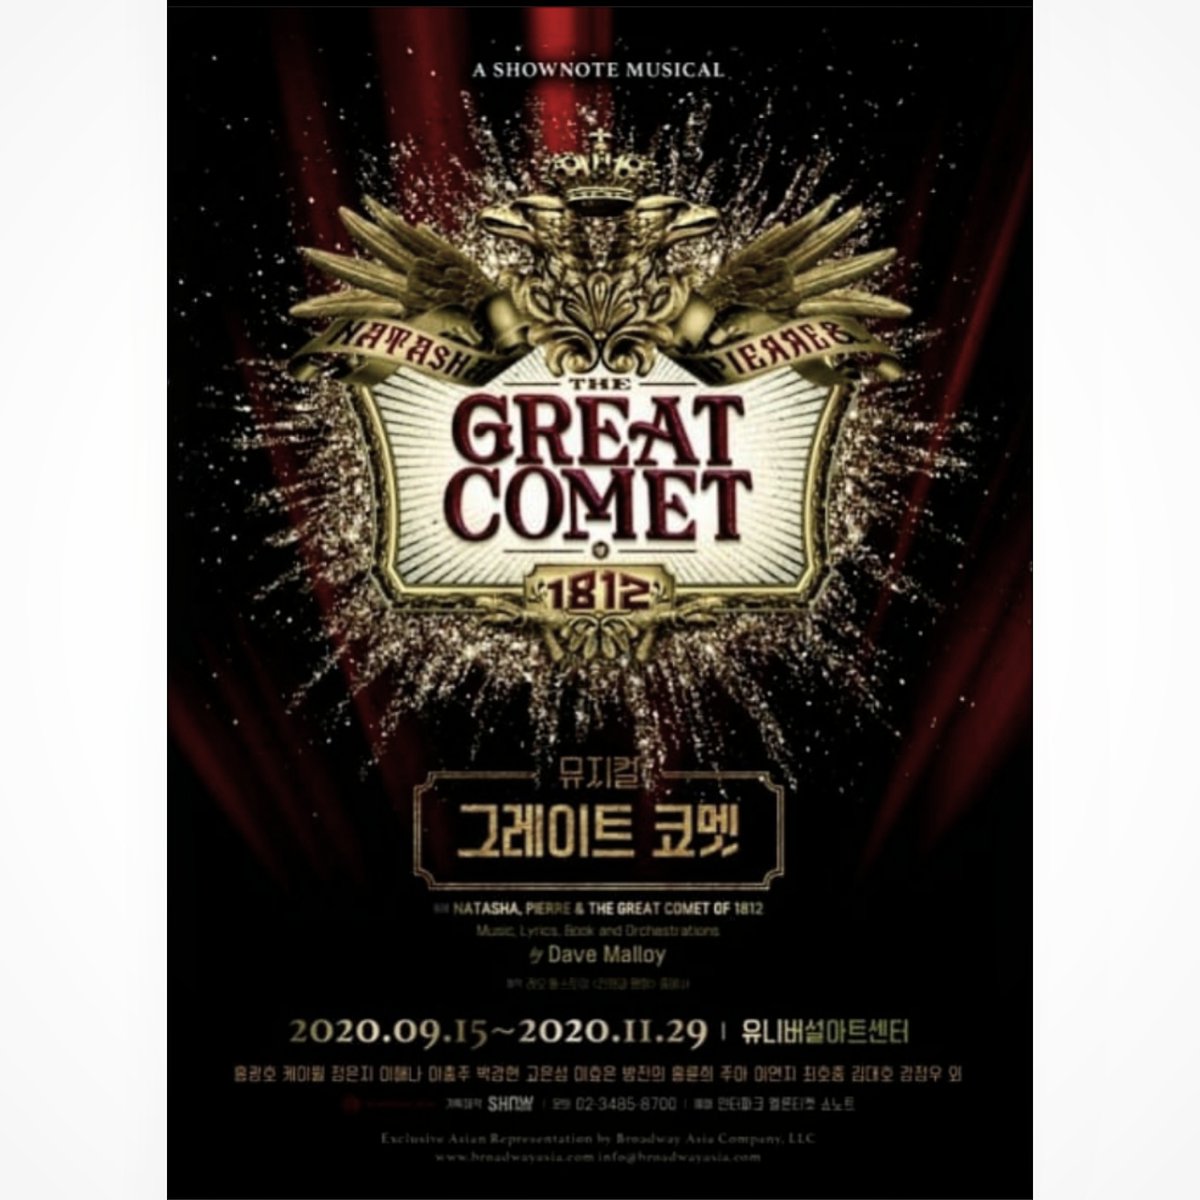 20200916 - 20201129
#그레이트코멧
#GreatComet
#GreatCometOf1812